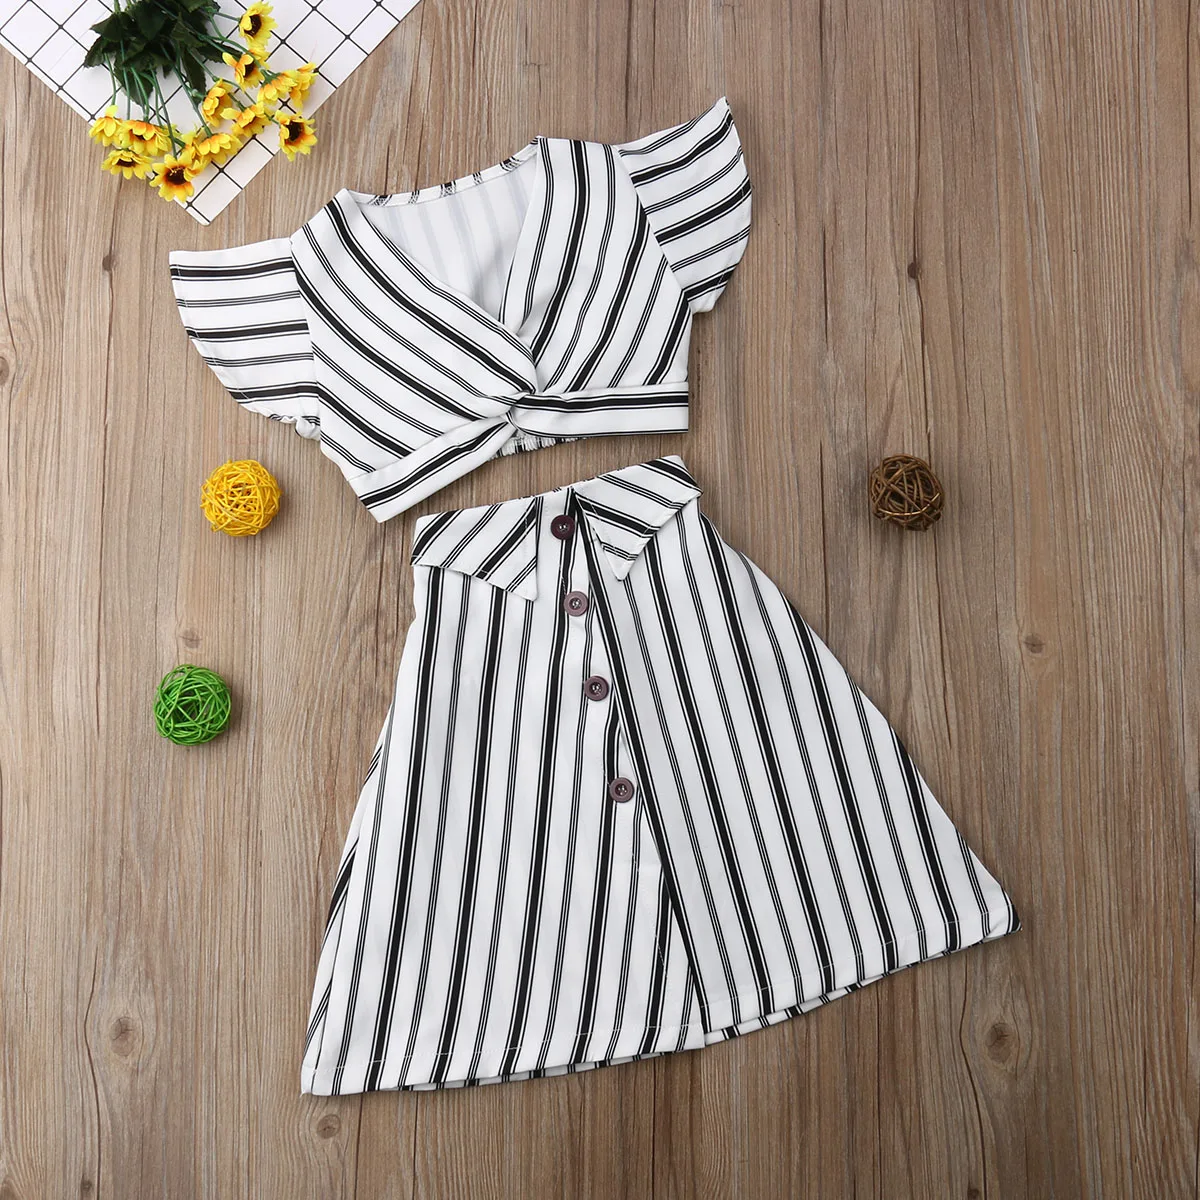 Pudcoco/летнее платье для девочек комплект детской одежды для маленьких девочек, детские нарядные платья для леди костюм в черно-белую полоску для девочек От 1 до 5 лет